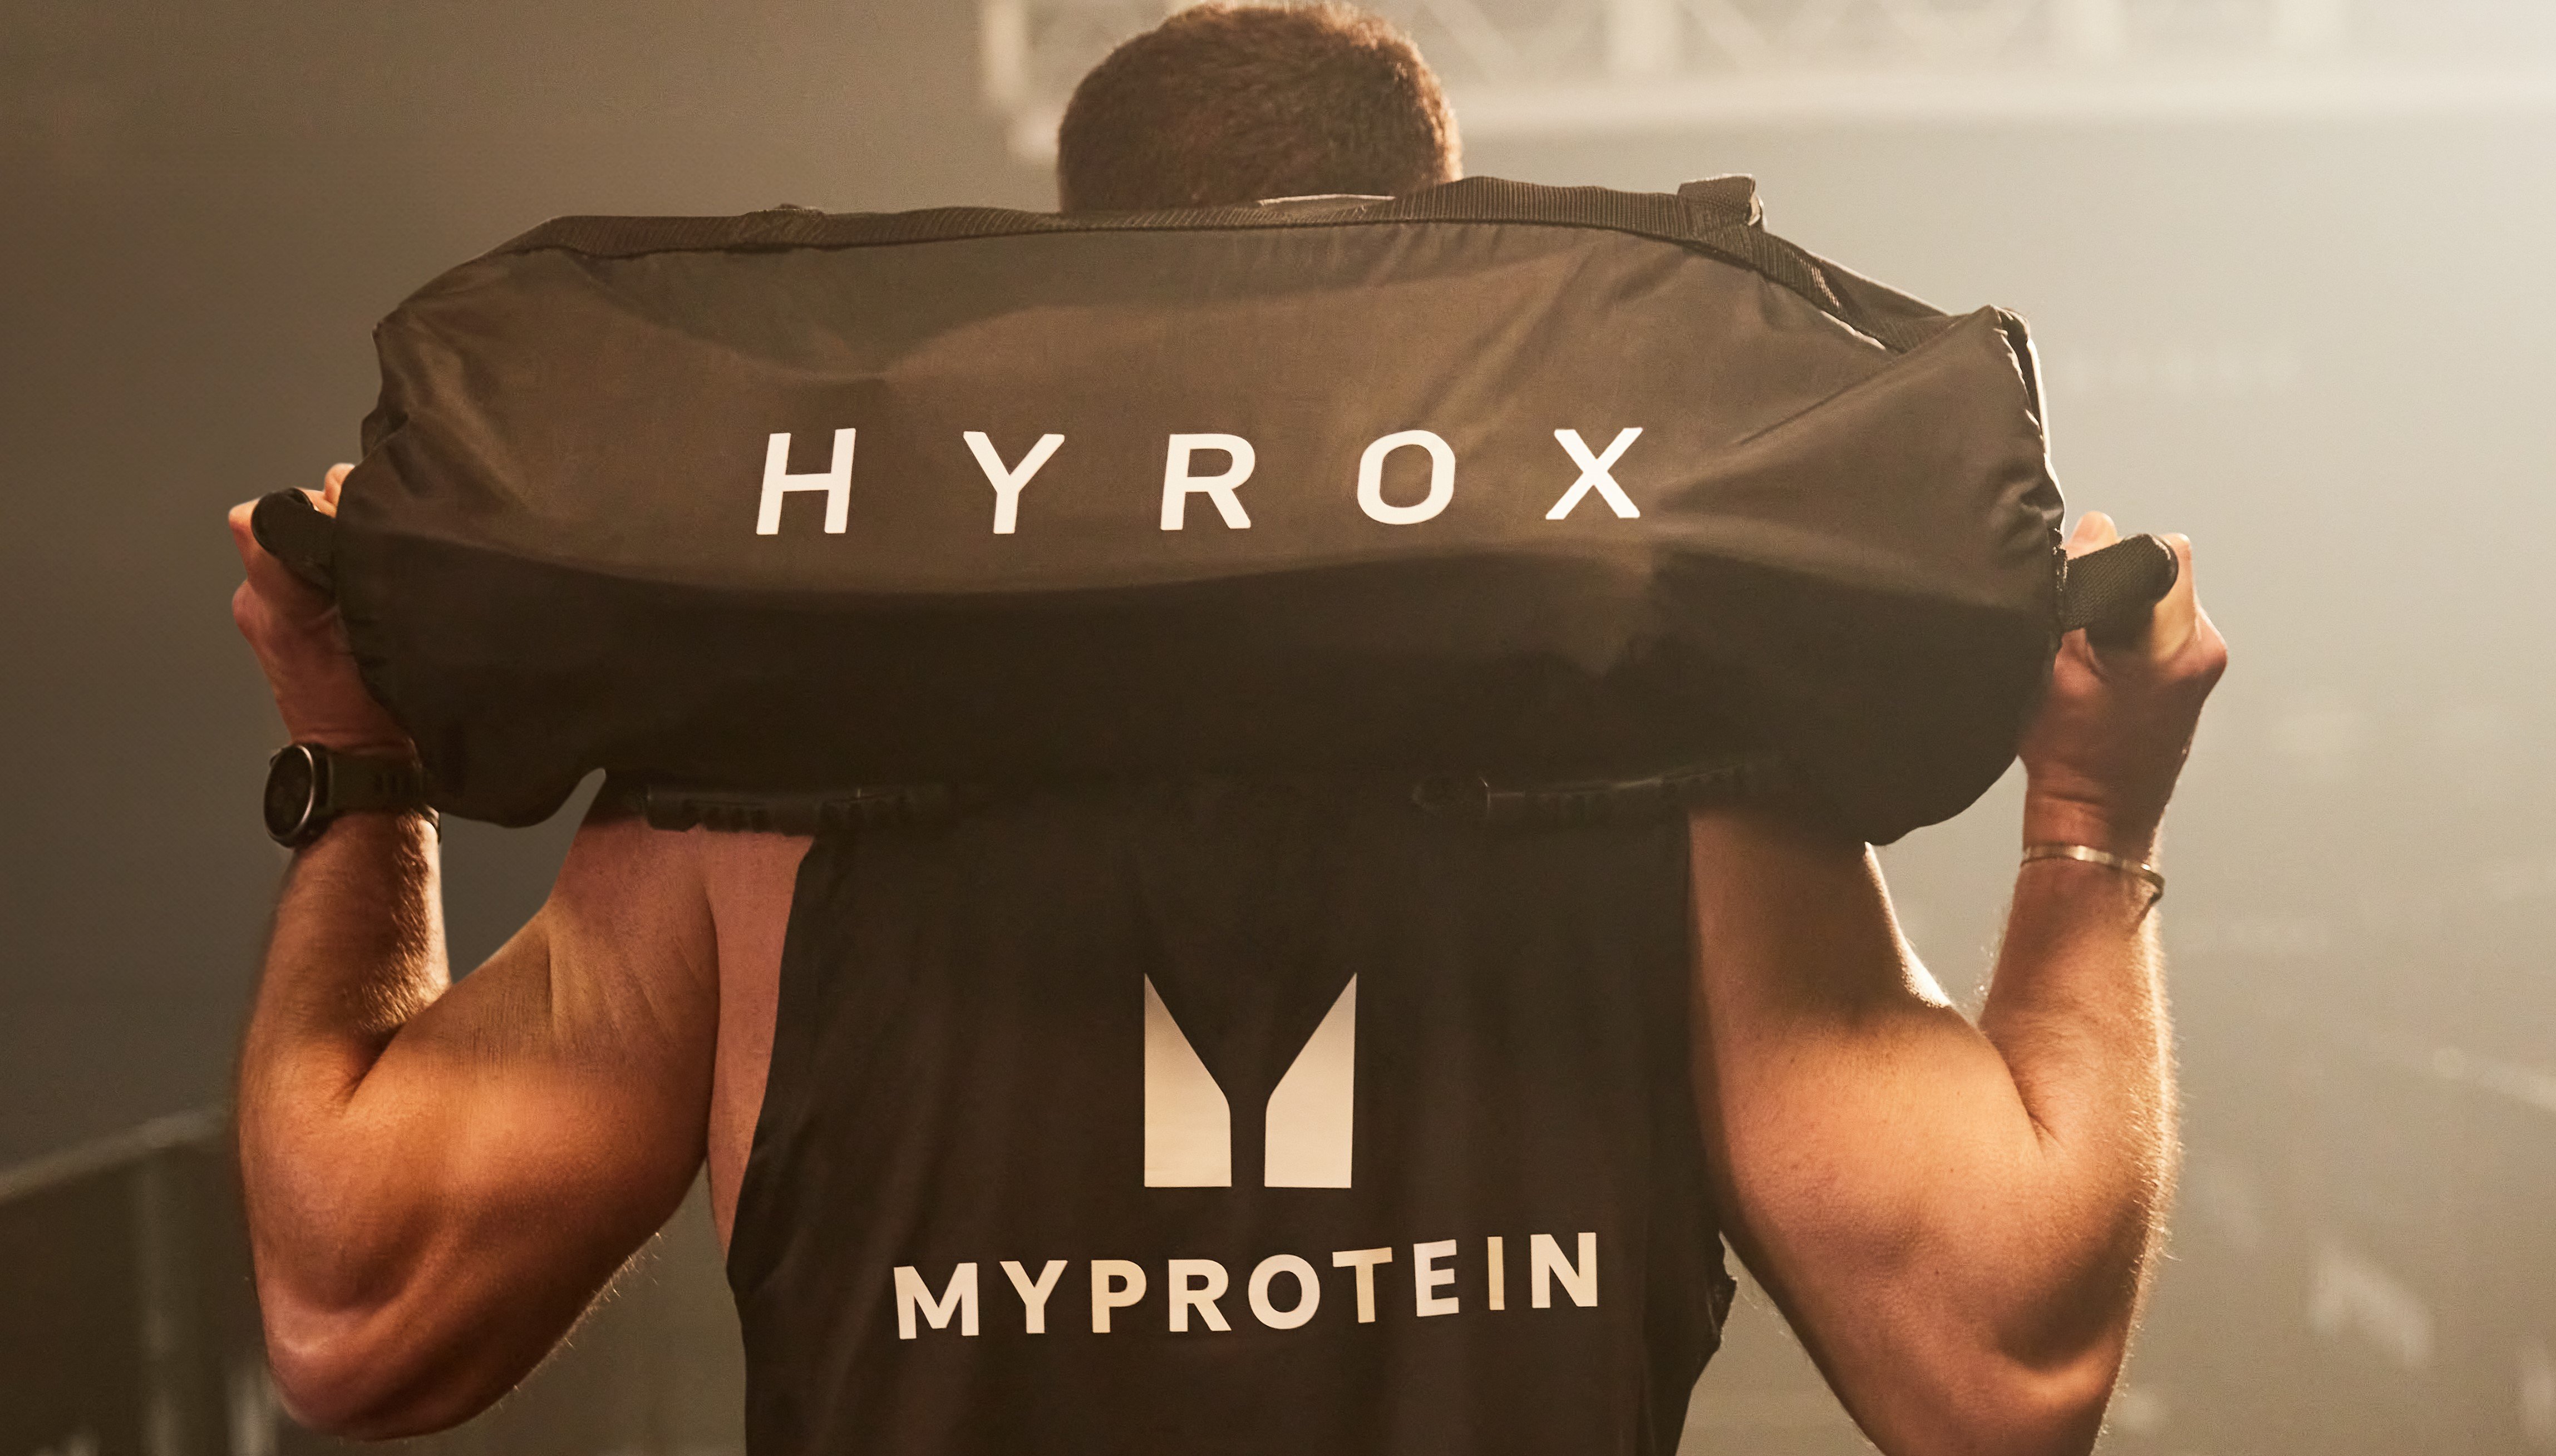 O que é o Hyrox e como treinar para a competição? - HSN